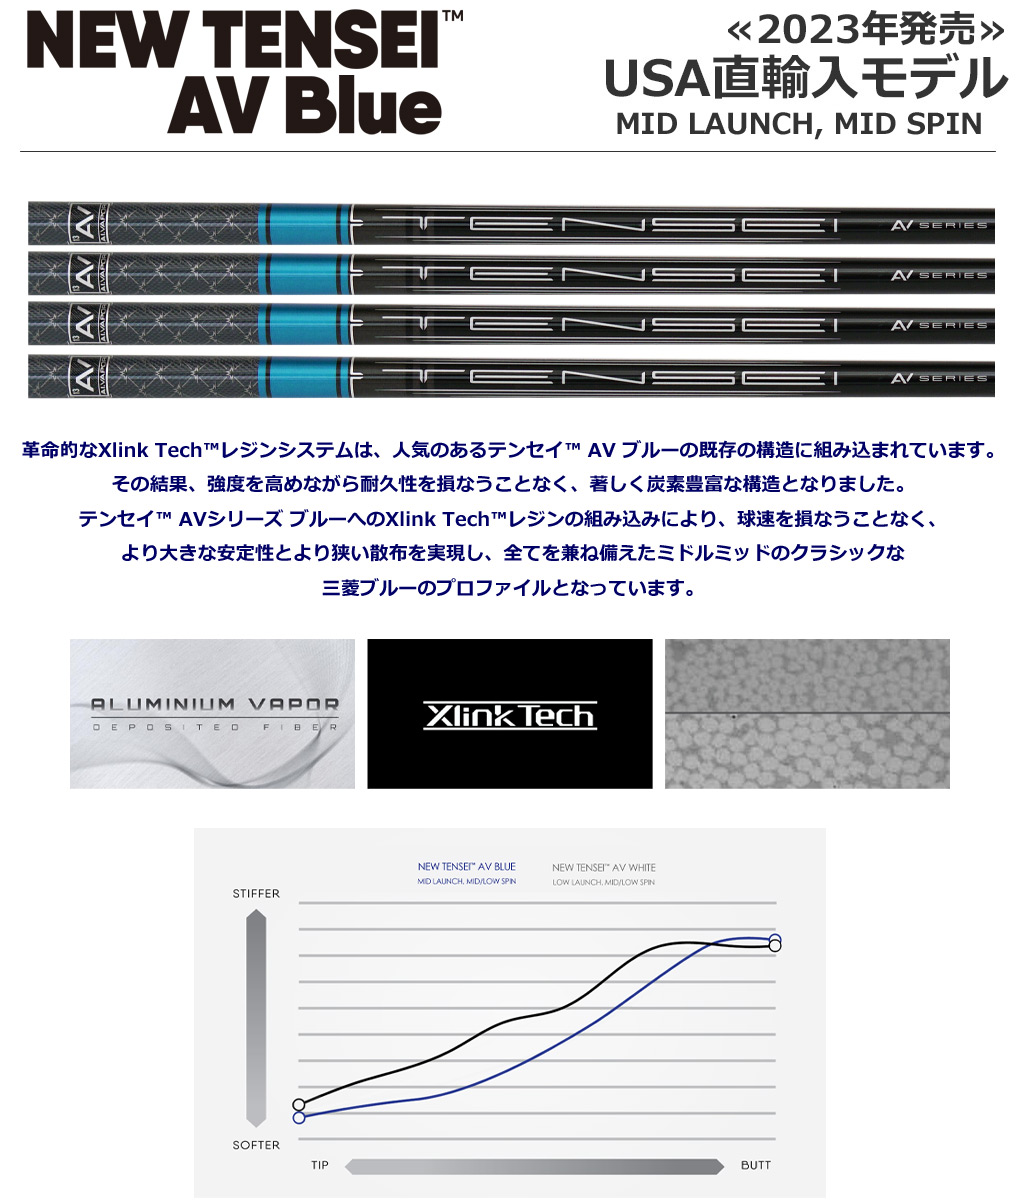 三菱ケミカル NEW TENSEI AVシリーズ BLUEのテクノロジー